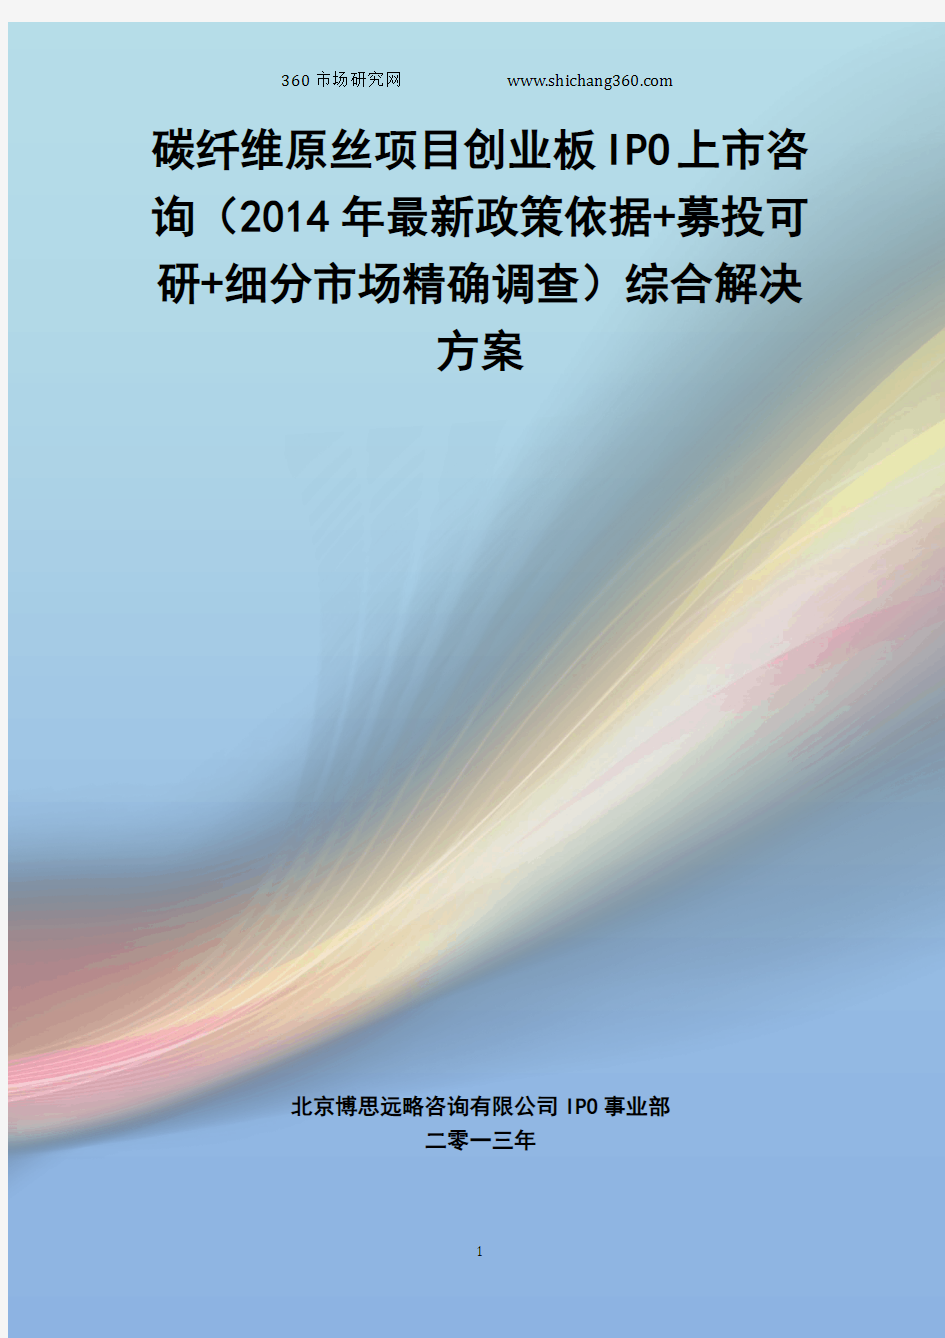 碳纤维原丝IPO上市咨询(2014年最新政策+募投可研+细分市场调查)综合解决方案